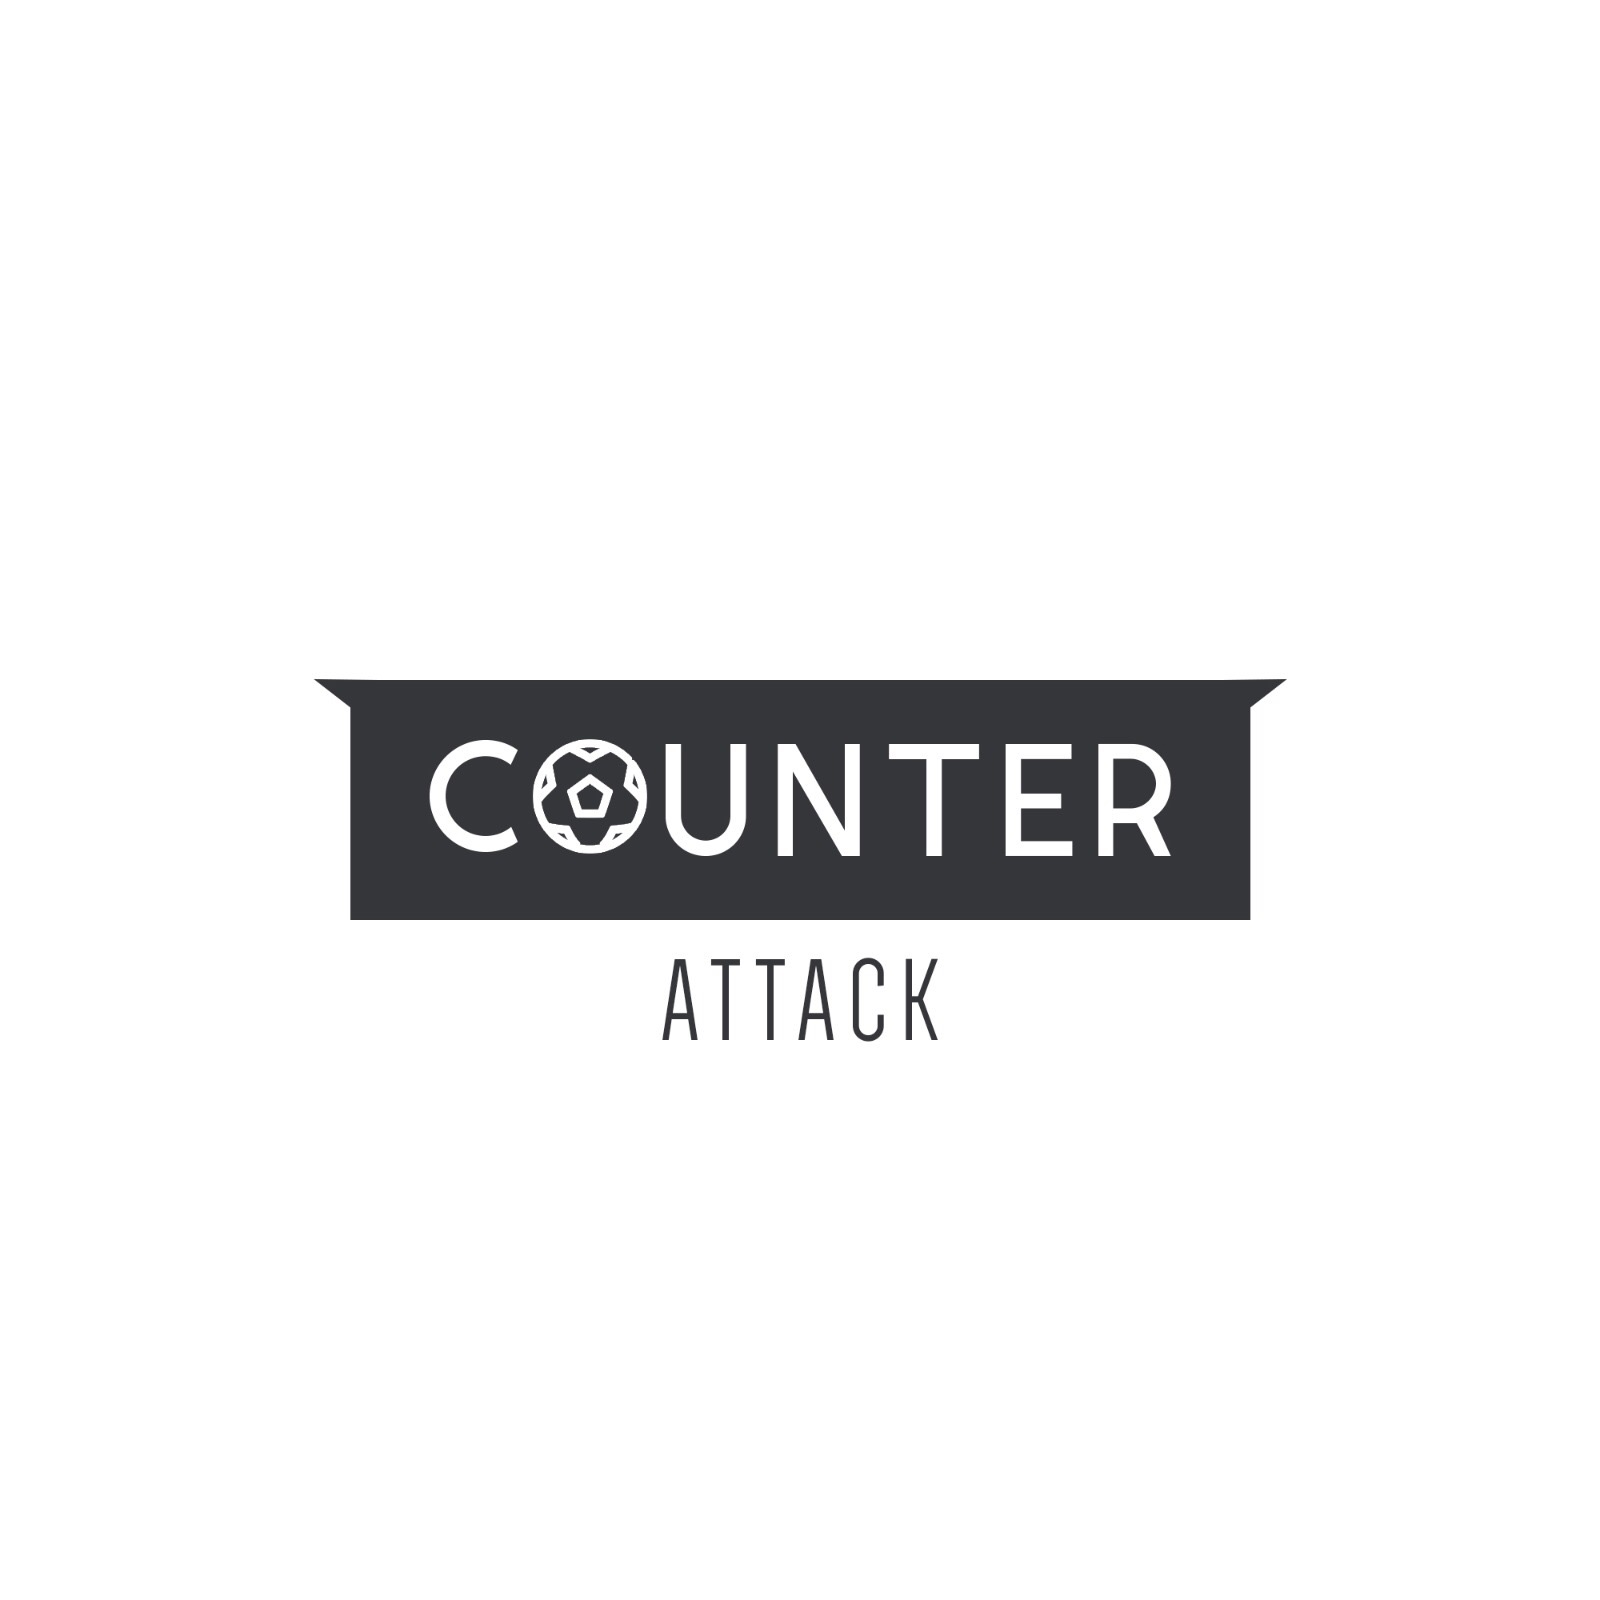 Counter Attack - Episode 41 - Arsenal Top 4 Dark Horses?